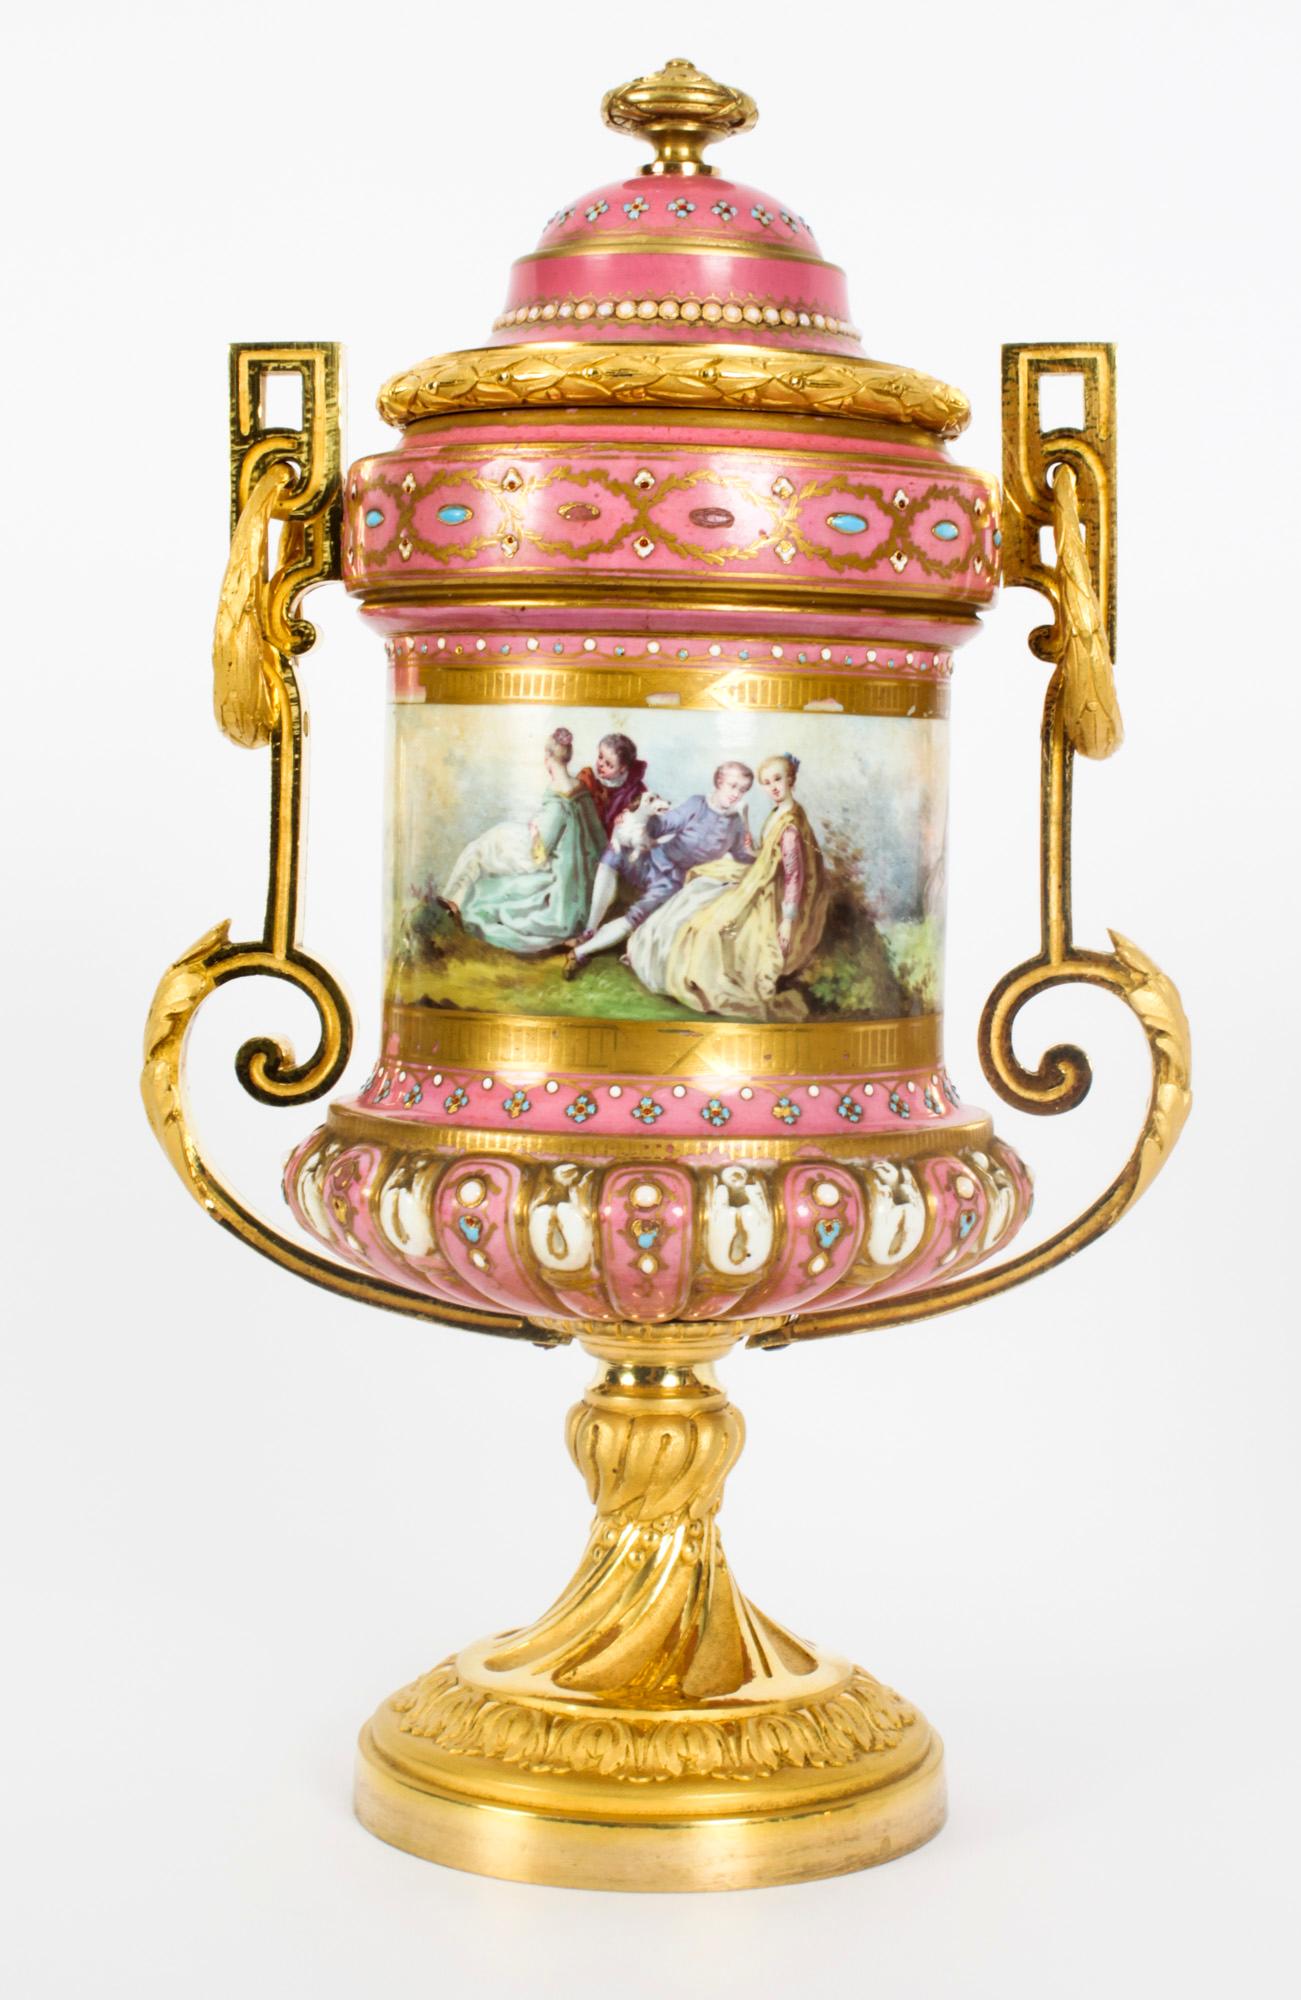 Dies ist ein schönes antikes Paar französischer Sevres-Porzellan- und Goldbronze-Vasen mit Deckeln, datiert um 1860.
 
Sie haben gewölbte Deckel und kannelierte Körper und sind mit handgemalten klassischen Gartenszenen von Ehepaaren nach Boucher